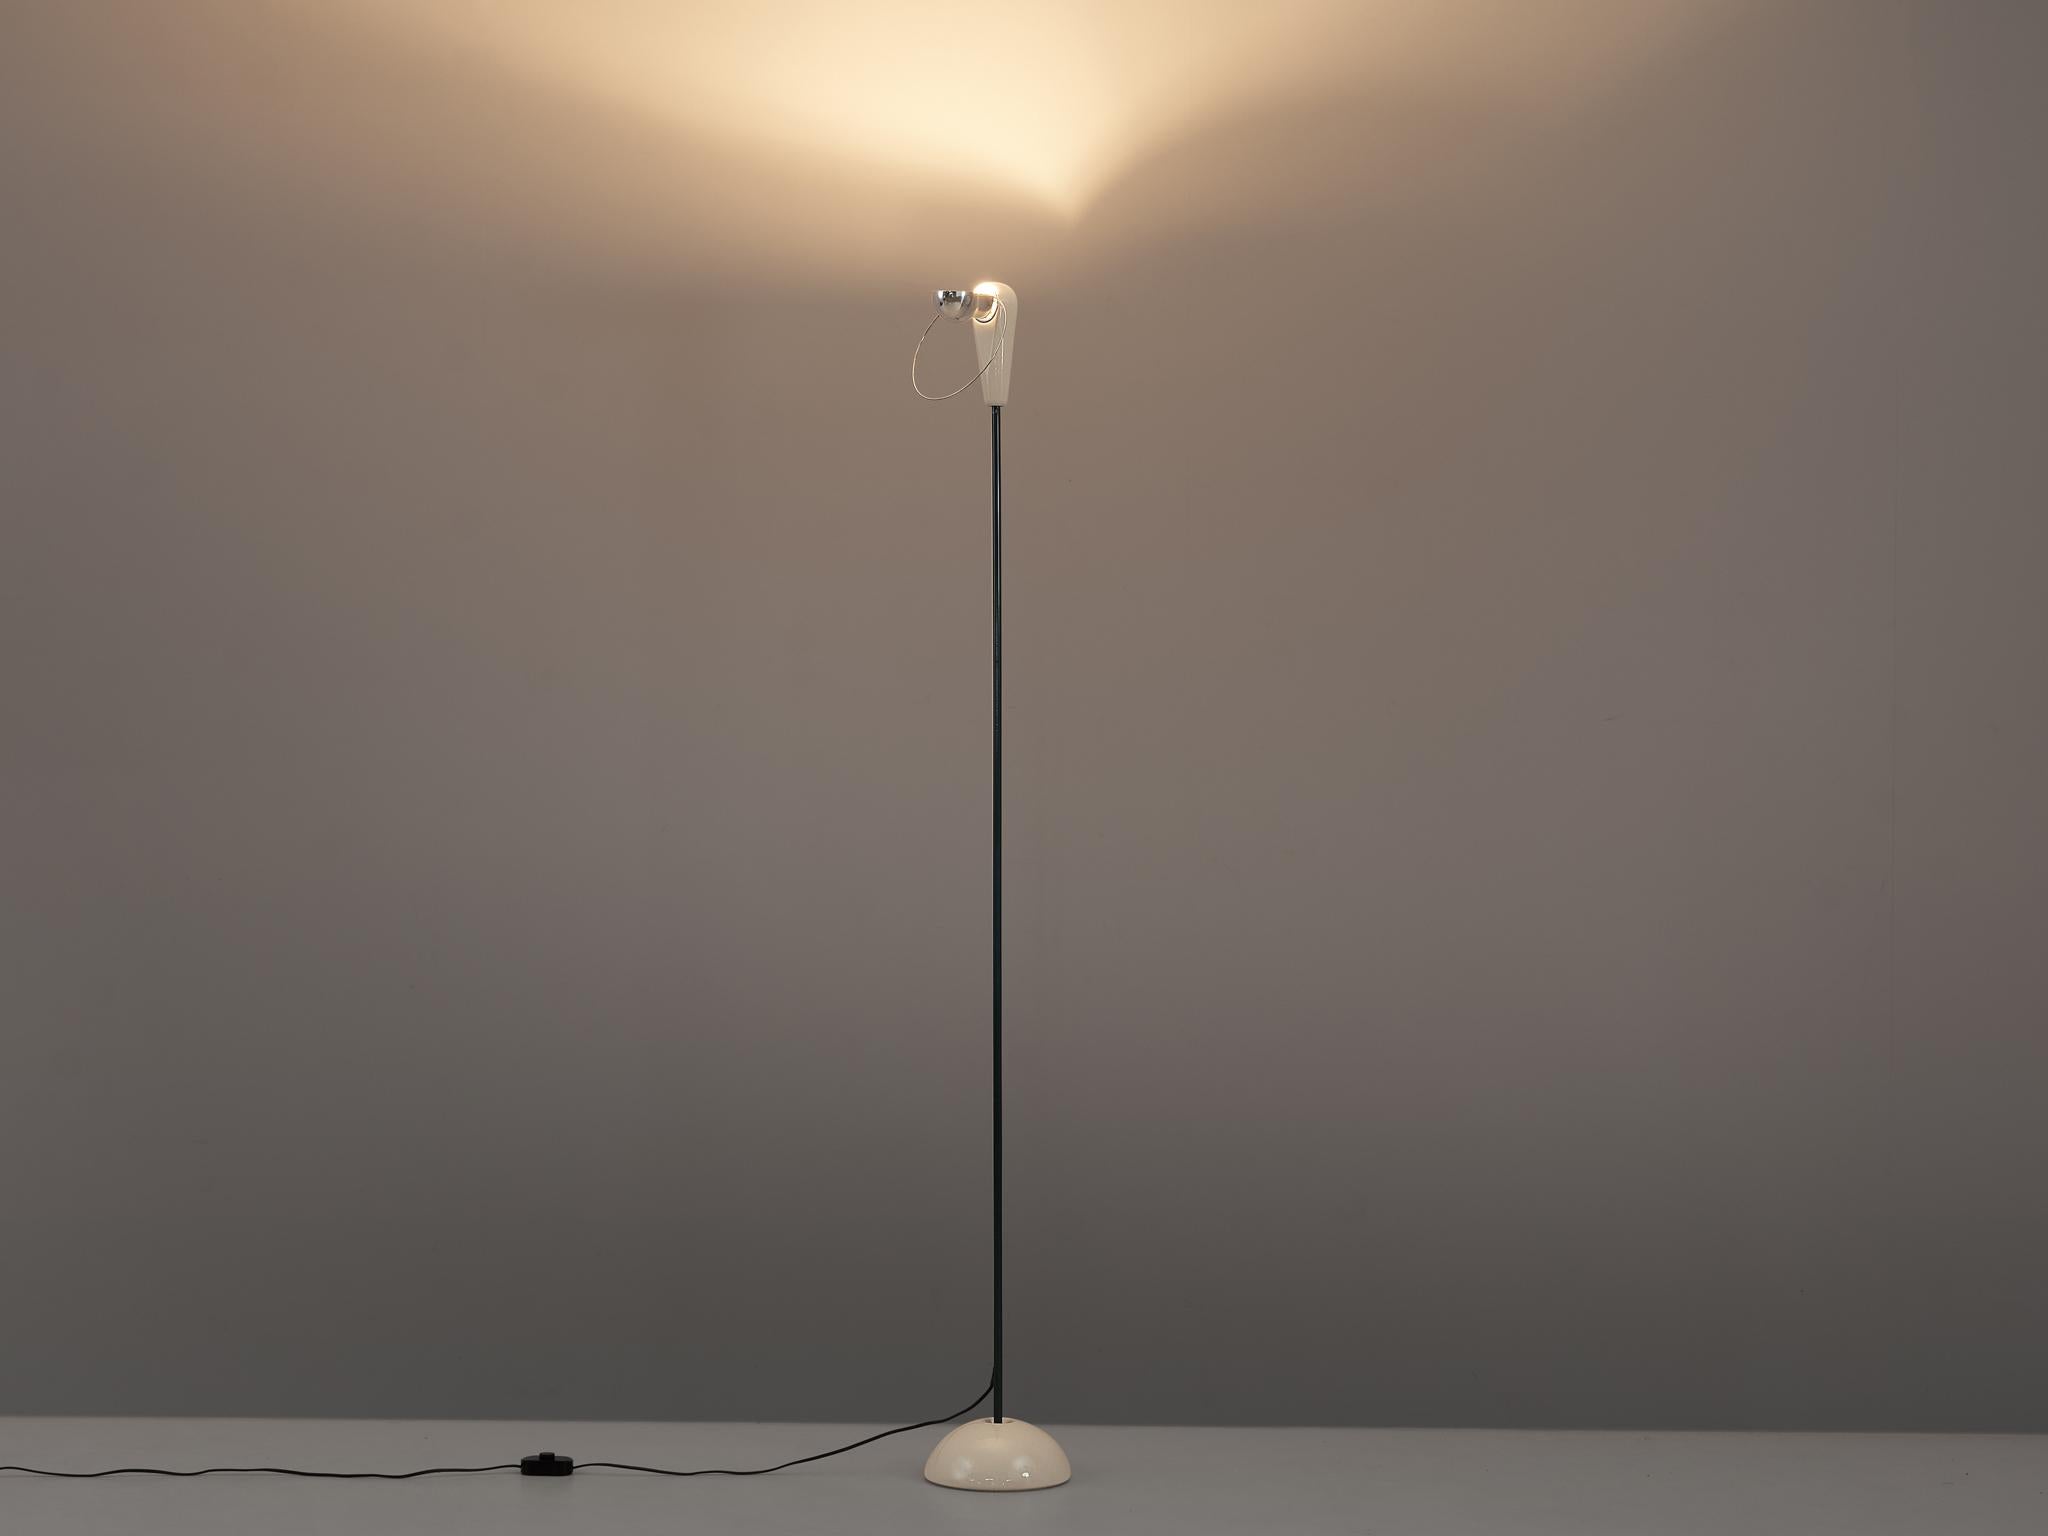 Achille Castiglioni pour Flos, lampadaire modèle 'Bi Bip', céramique, acier, Italie, 1977

Délicat lampadaire conçu par Achille Castiglioni en 1977. Les formes mais aussi les matériaux font de cette lampe une expression particulière. D'une base en